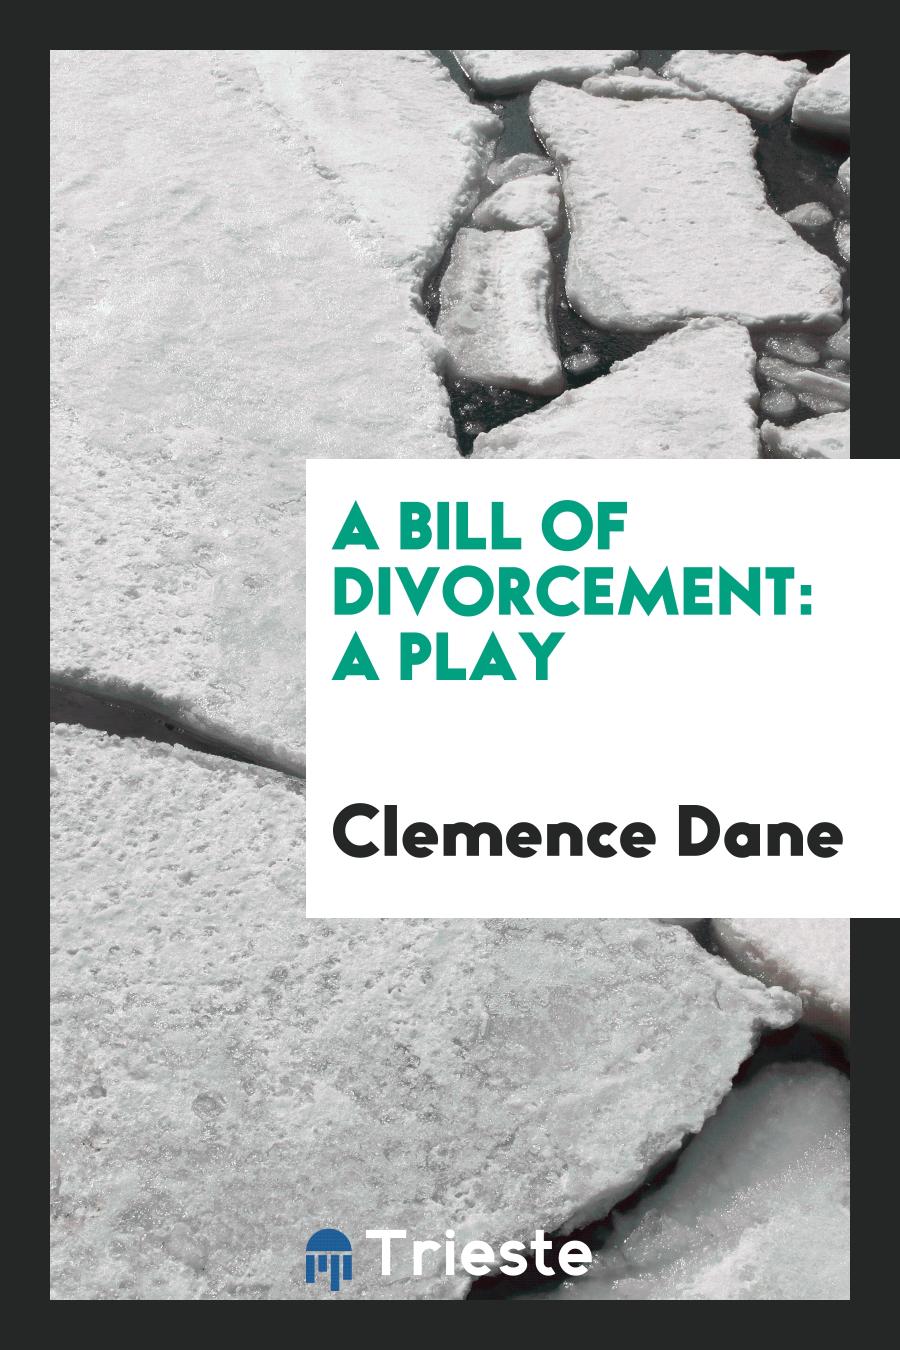 A Bill of Divorcement: A Play